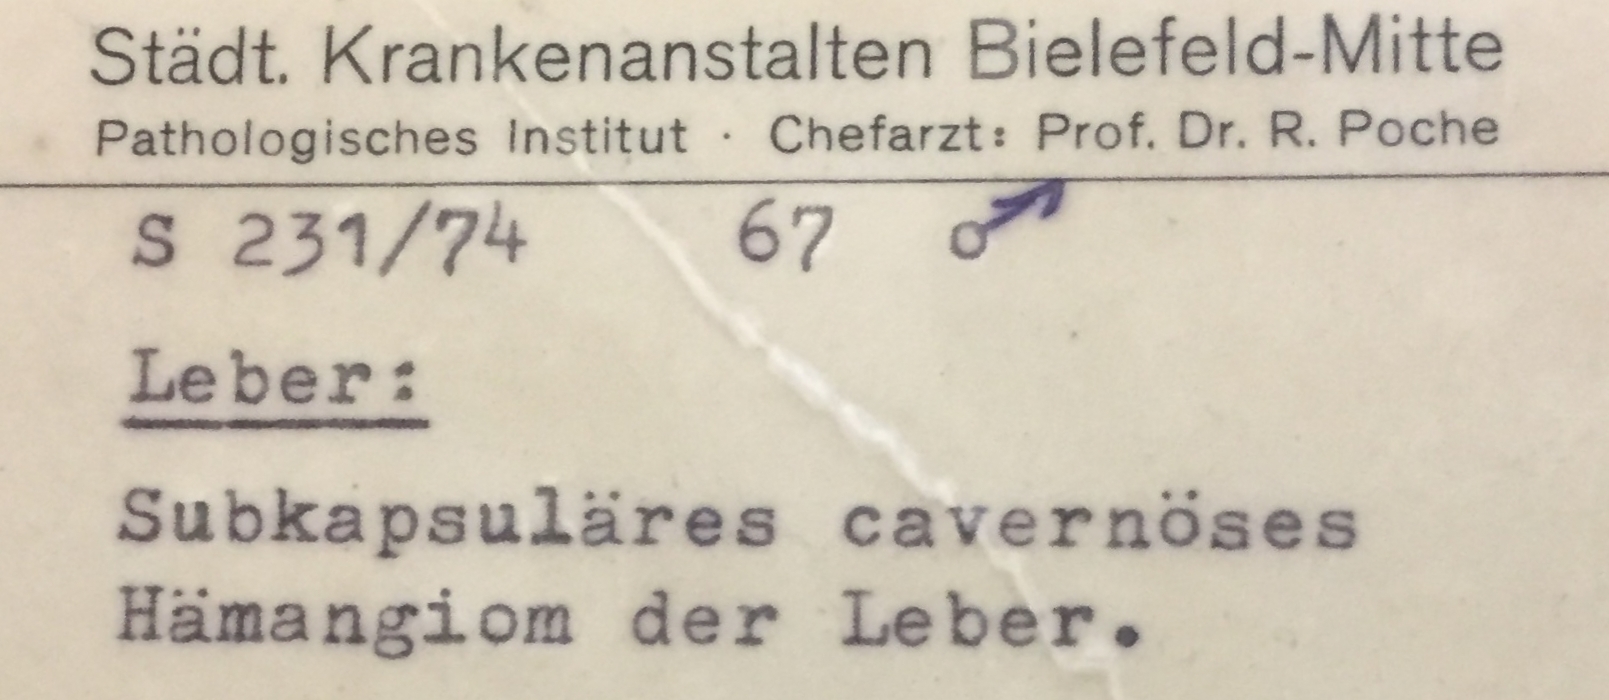 Leber: subkapsuläres cavernöses Hämangiom (Krankenhausmuseum Bielefeld e.V. CC BY-NC-SA)